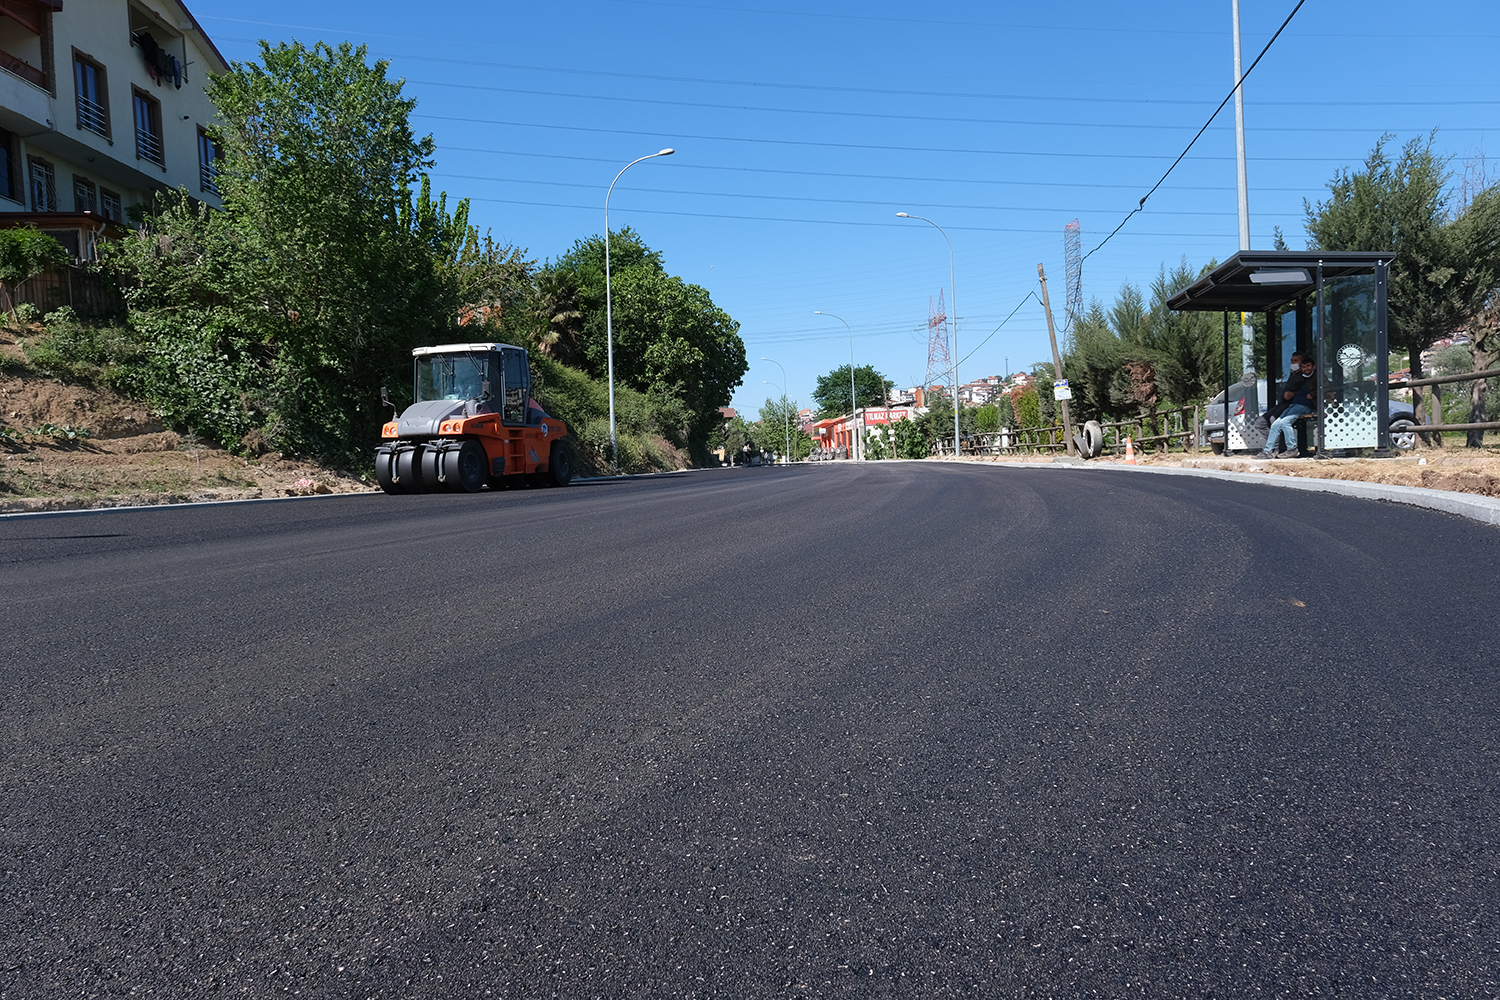 32 Evler Mahallesi’nde son etap için asfalt öncesi hazırlık başladı